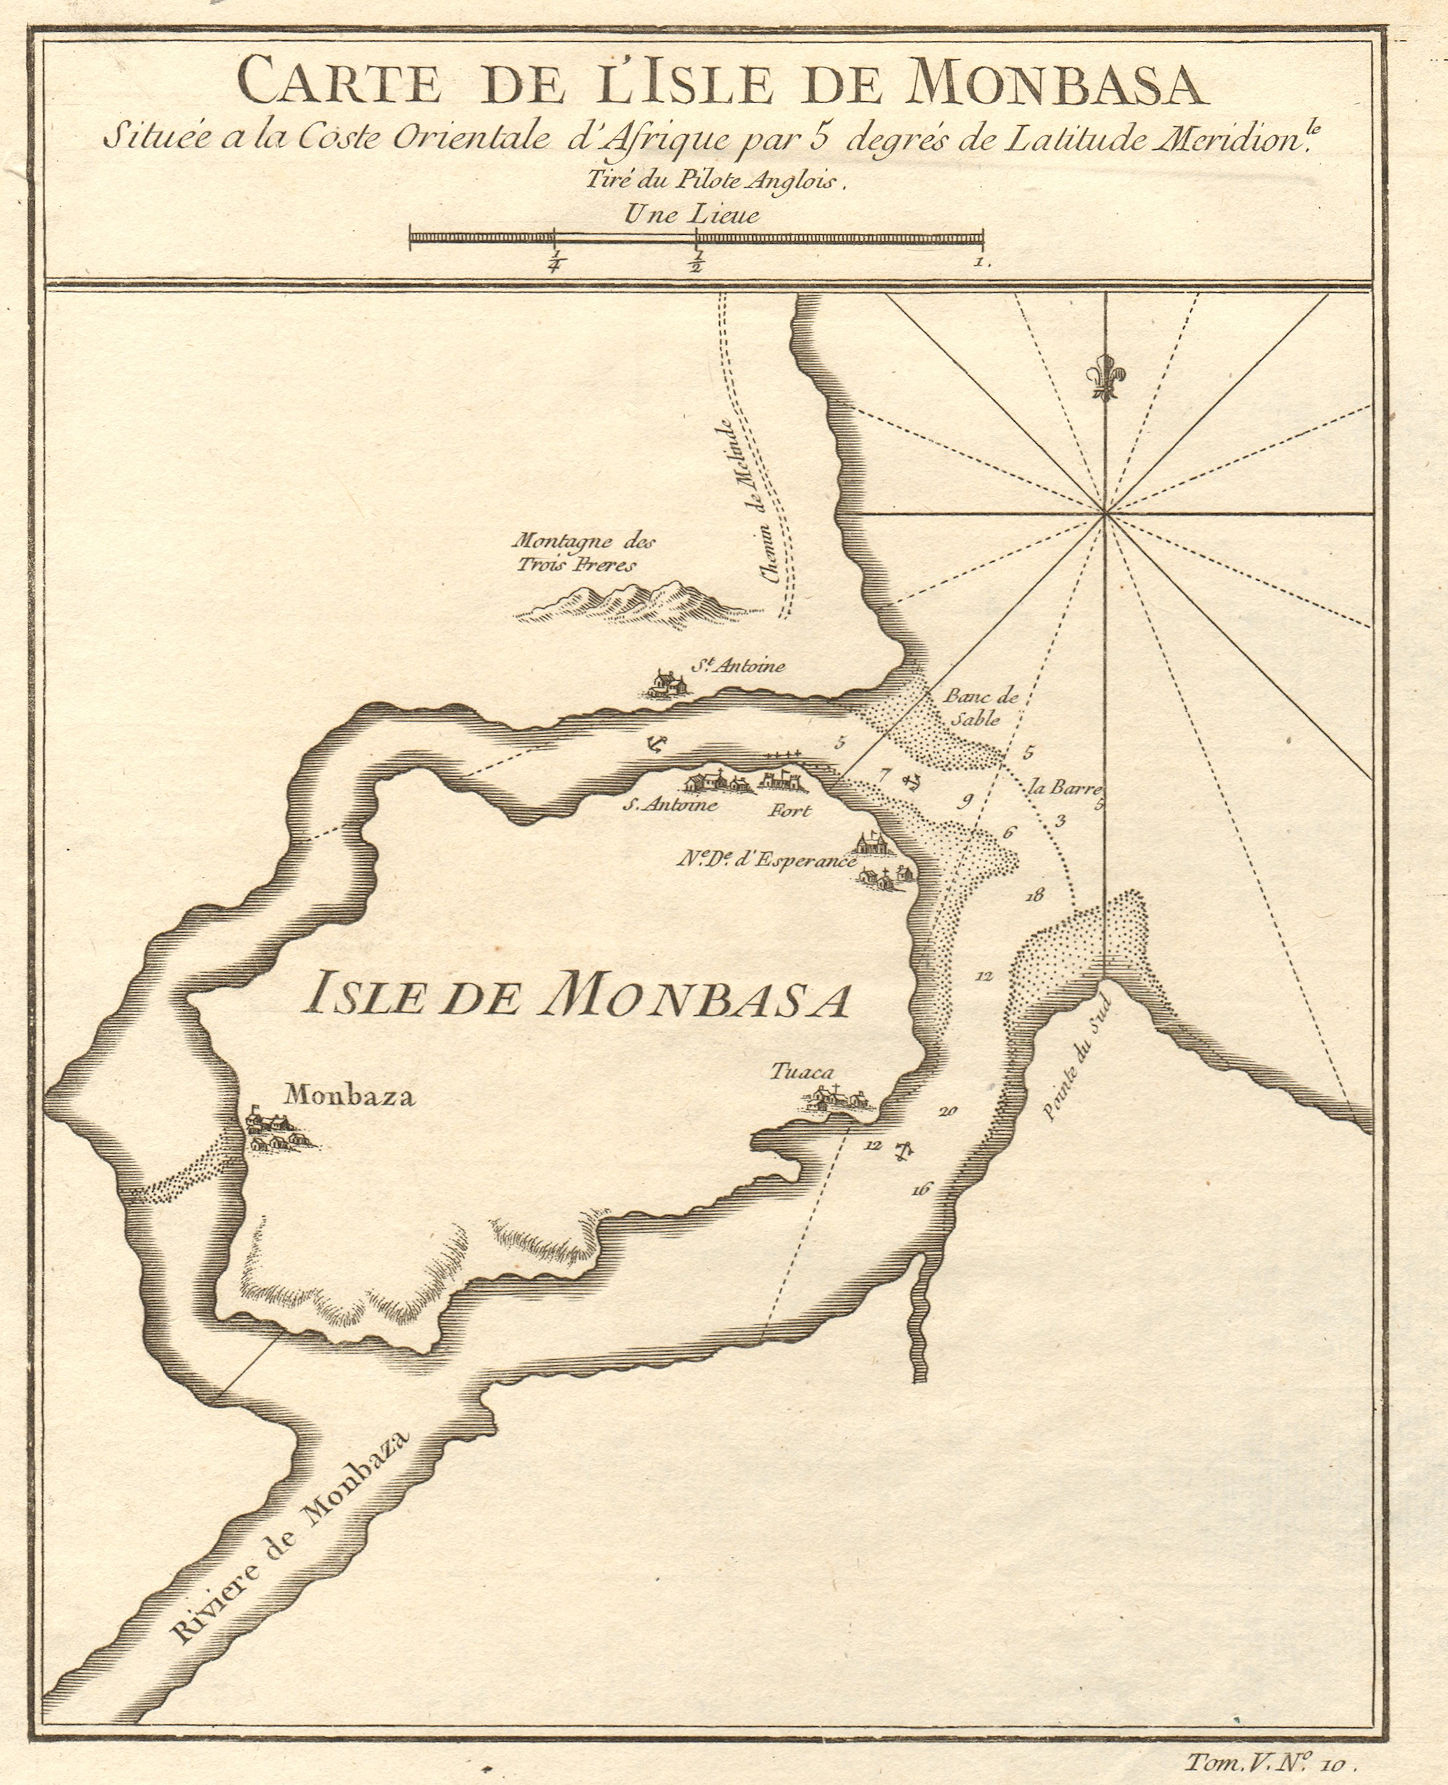 Associate Product 'Carte de I'Isle de Monbasa'. Mombasa Island, Kenya. BELLIN 1748 old map